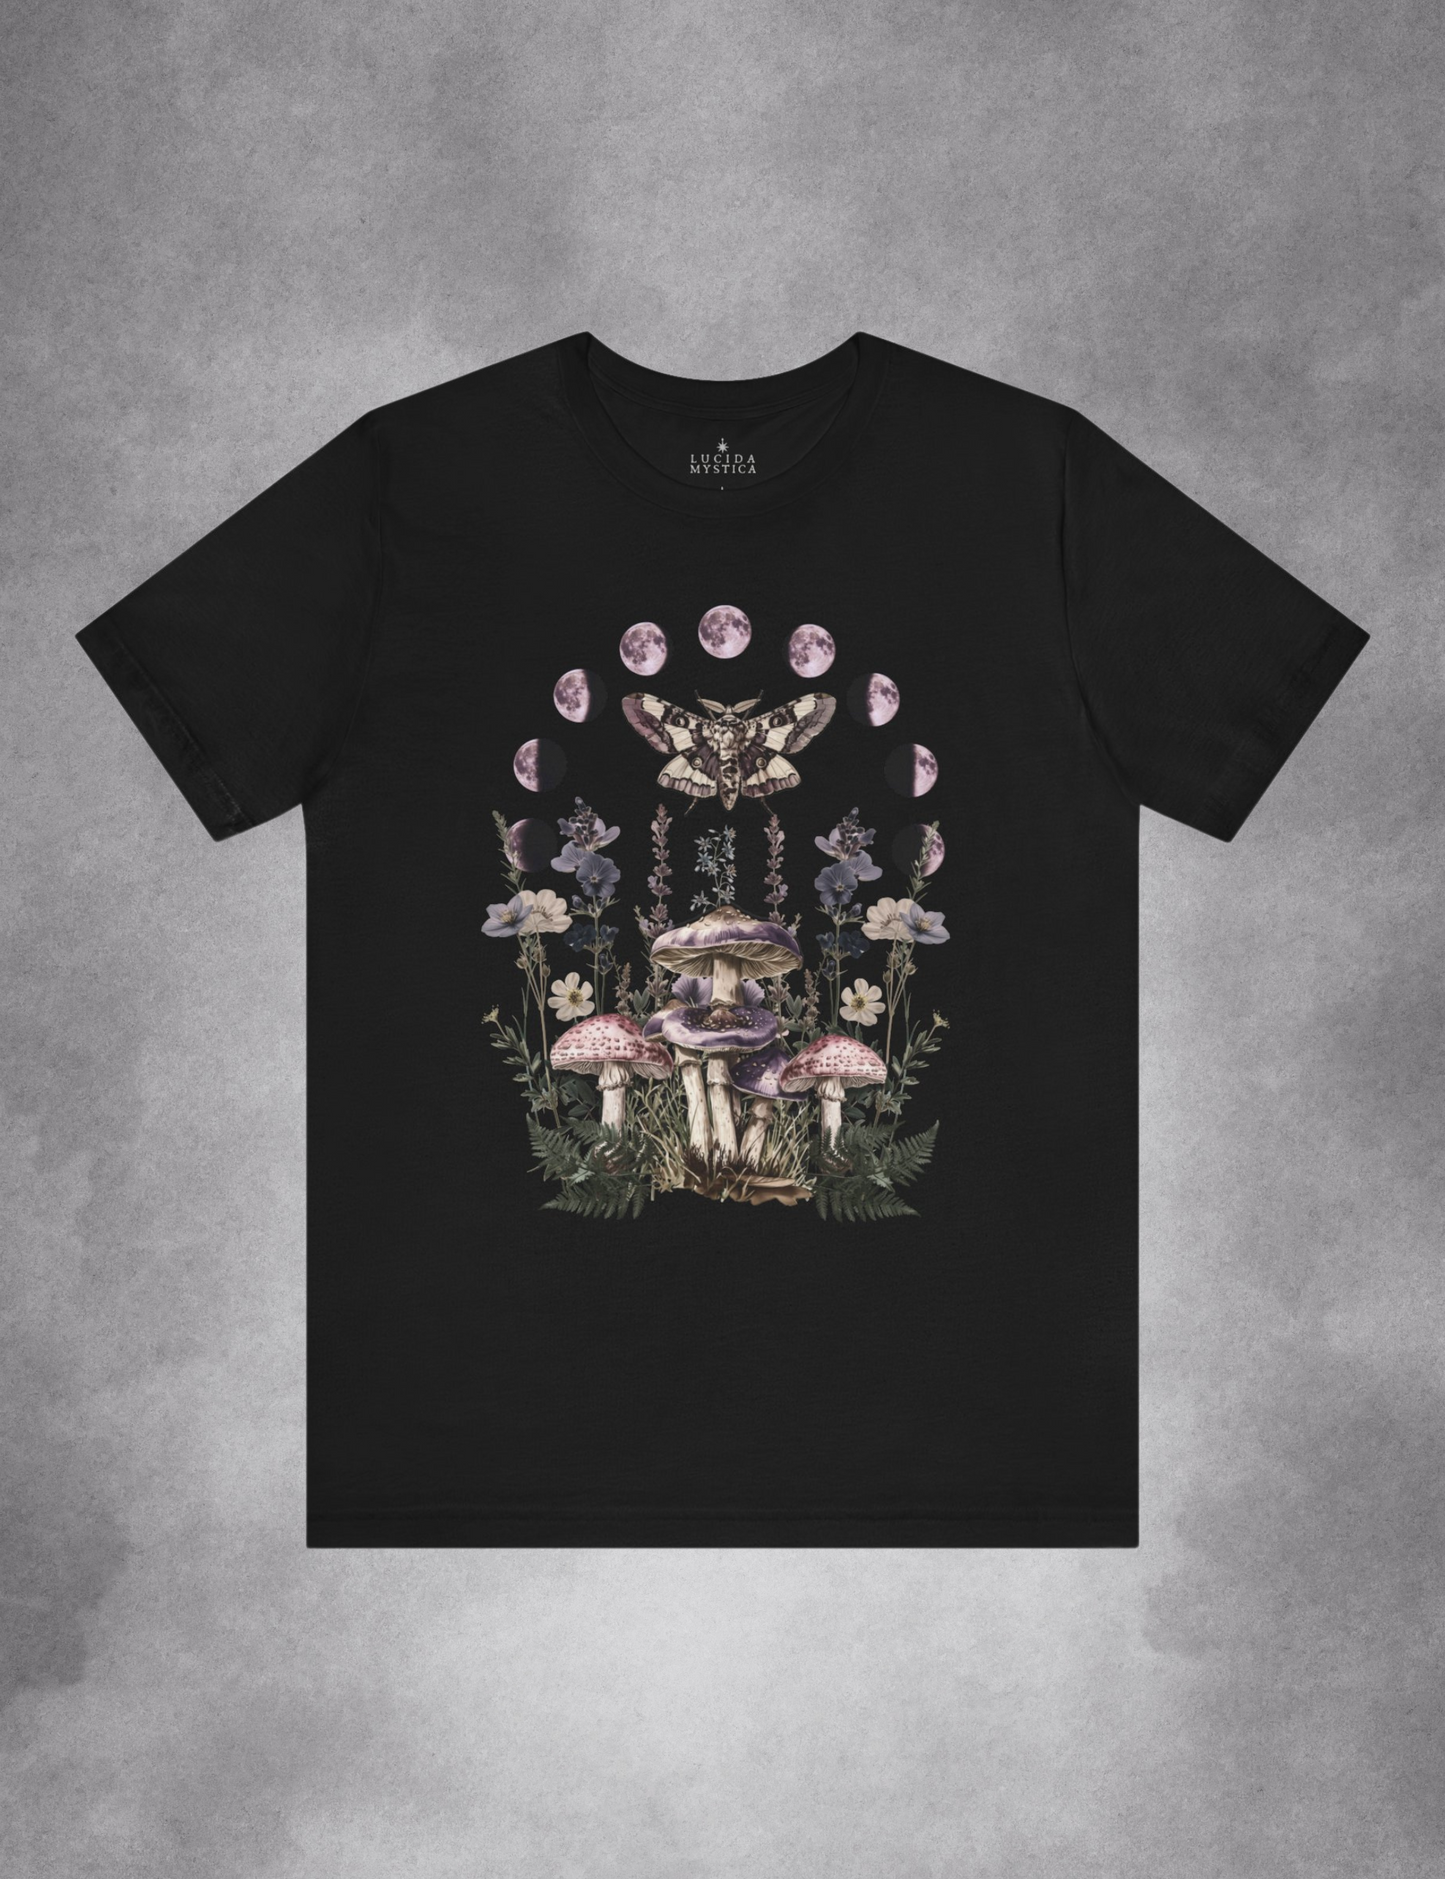 Dark Cottagecore Aesthetic Fairycore Grunge Clothing Moth Mushroom Moon Phase Plus Size Witchy Shirt